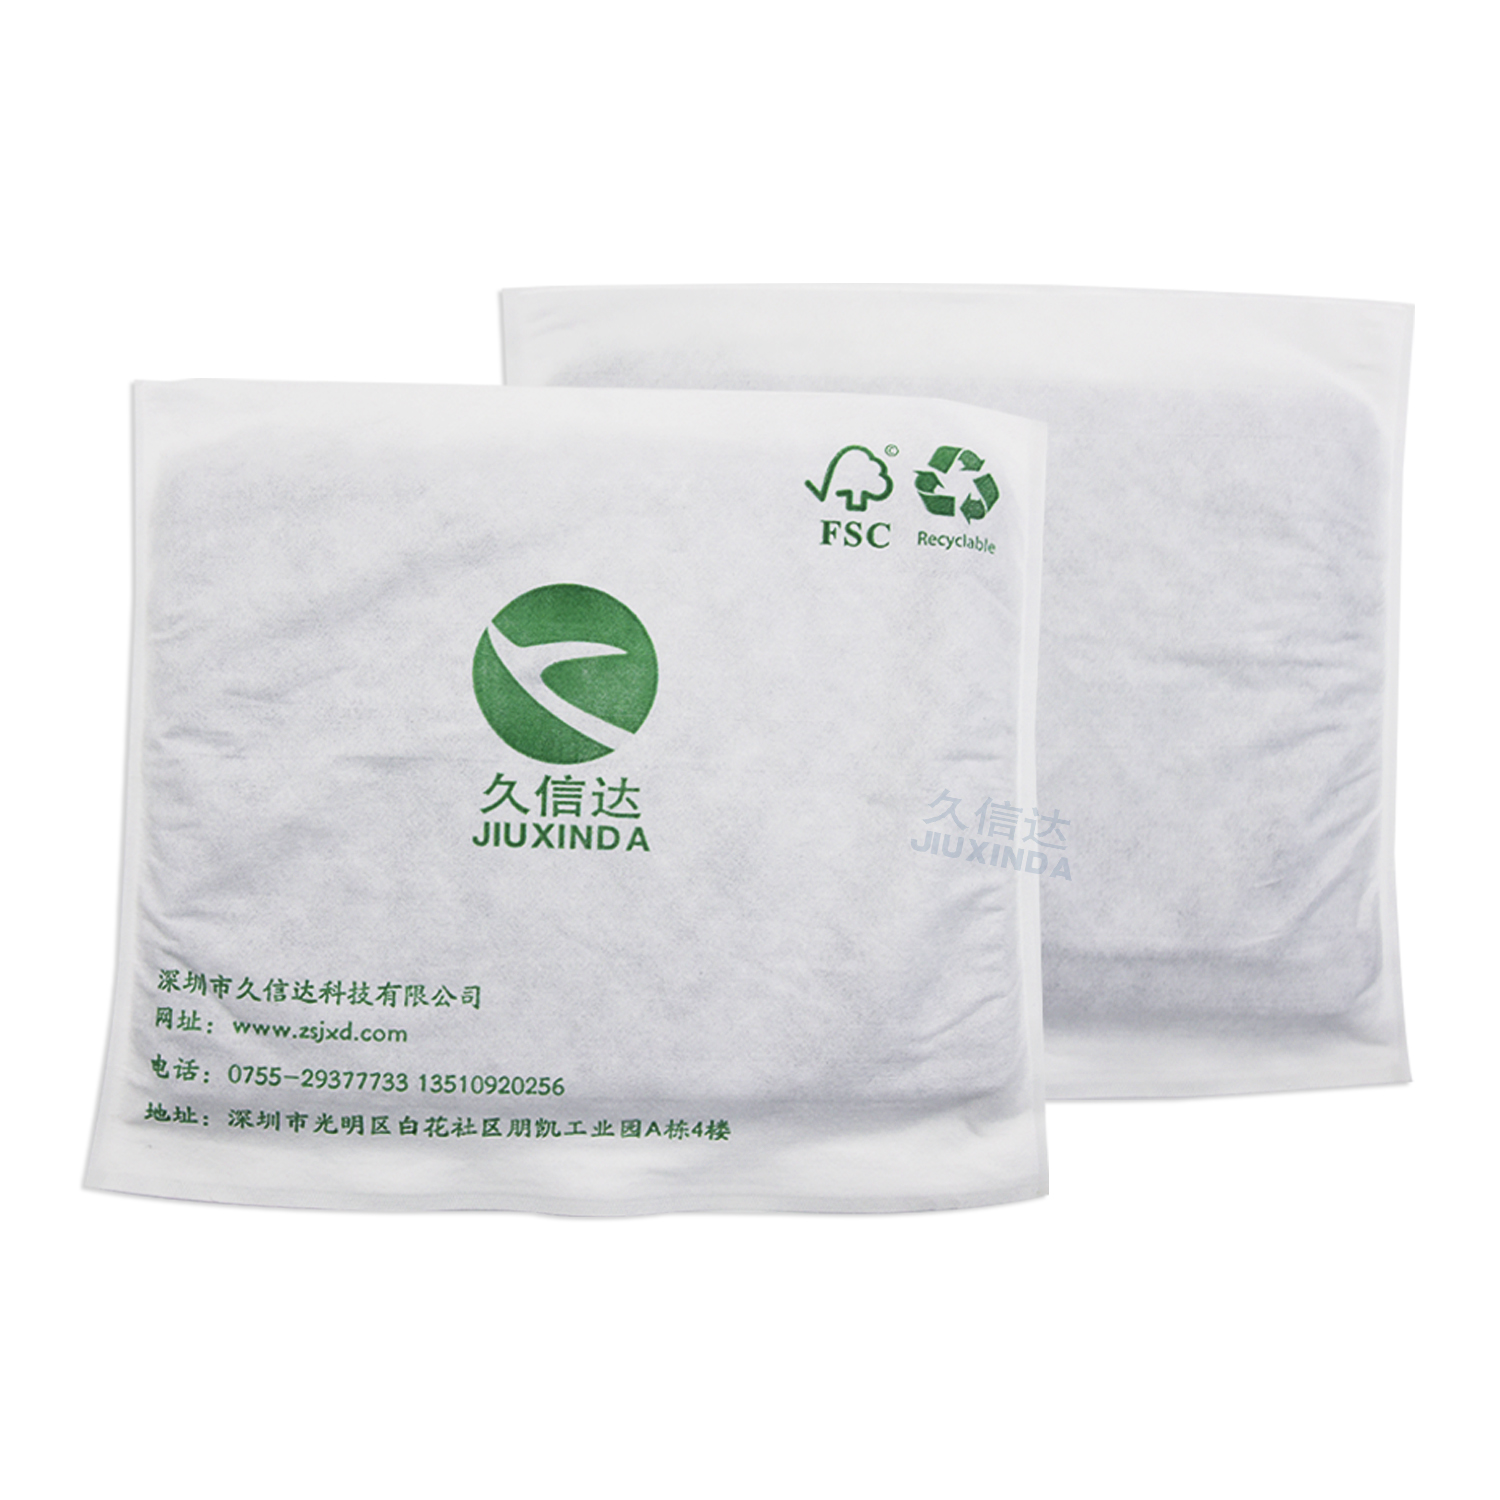 降解纤维袋与传统塑料袋相比有哪些优势？